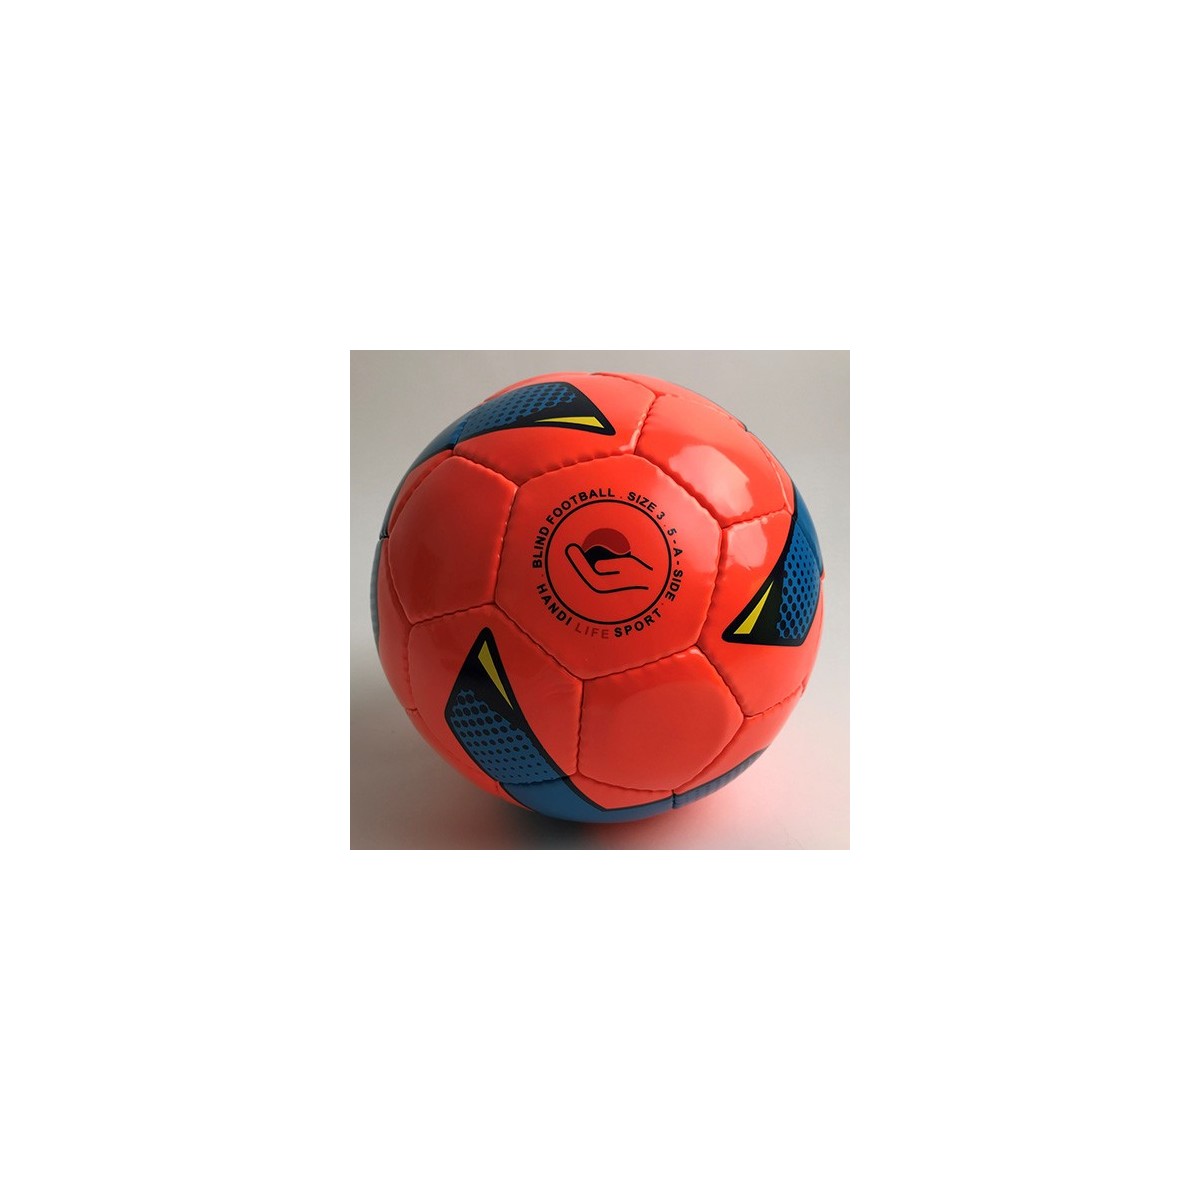 Ballon de Cécifoot - 1 - Ballon de Cécifoot football solide en PVC.
Le ballon de football est de taille 3, avec 4 dispositifs s